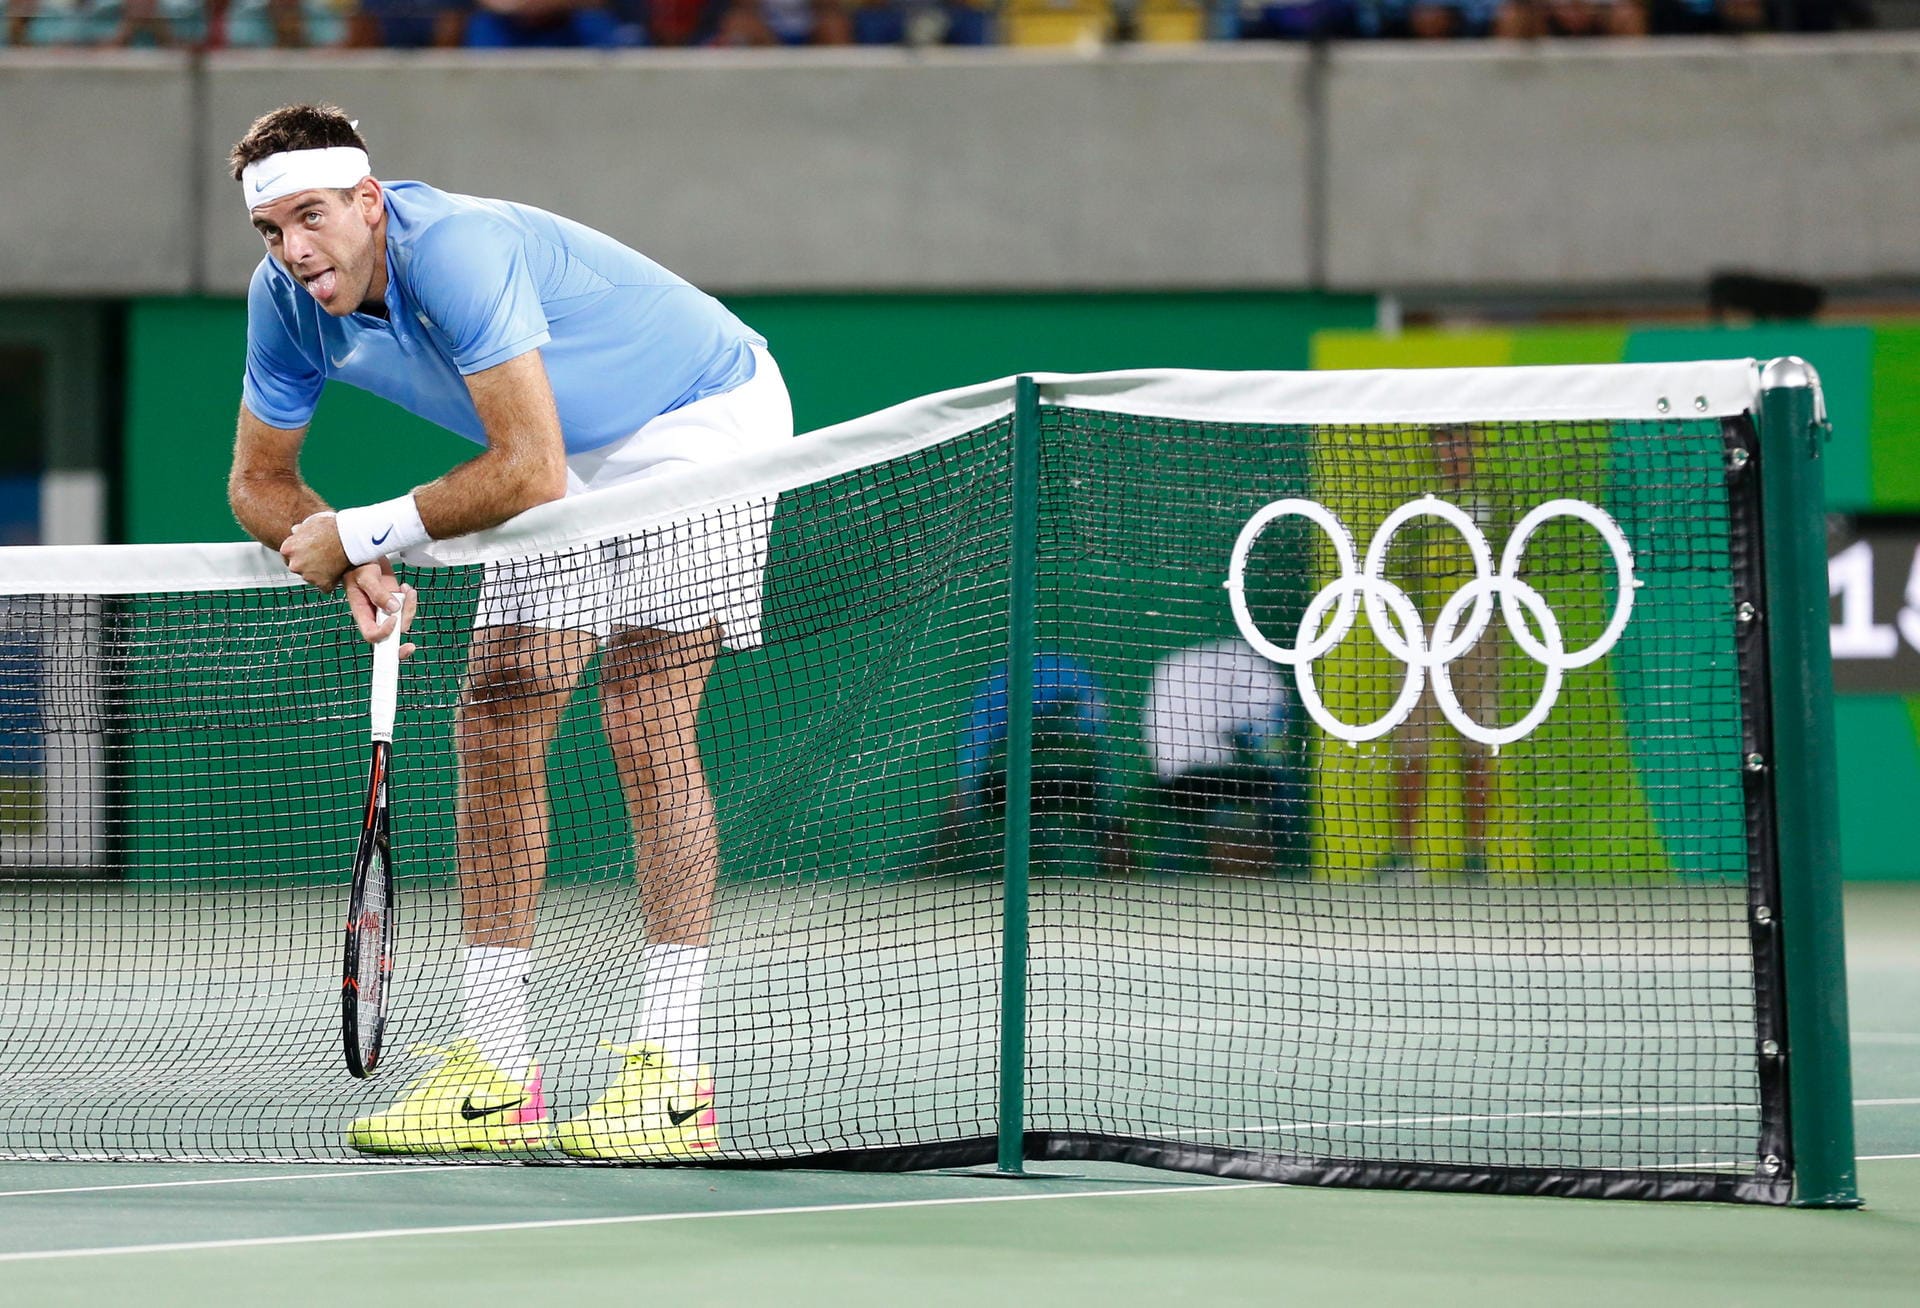 Netzangriff: Der Argentinier Juan Martin Del Potro war in seinem Tennis-Match gegen den Serben Novak Djokovic sehr anlehungsbedürftig. Am Ende durfte sich der Südamerikaner jedoch freuen, hatte er den Goldfavoriten doch in zwei Sätzen bezwungen.